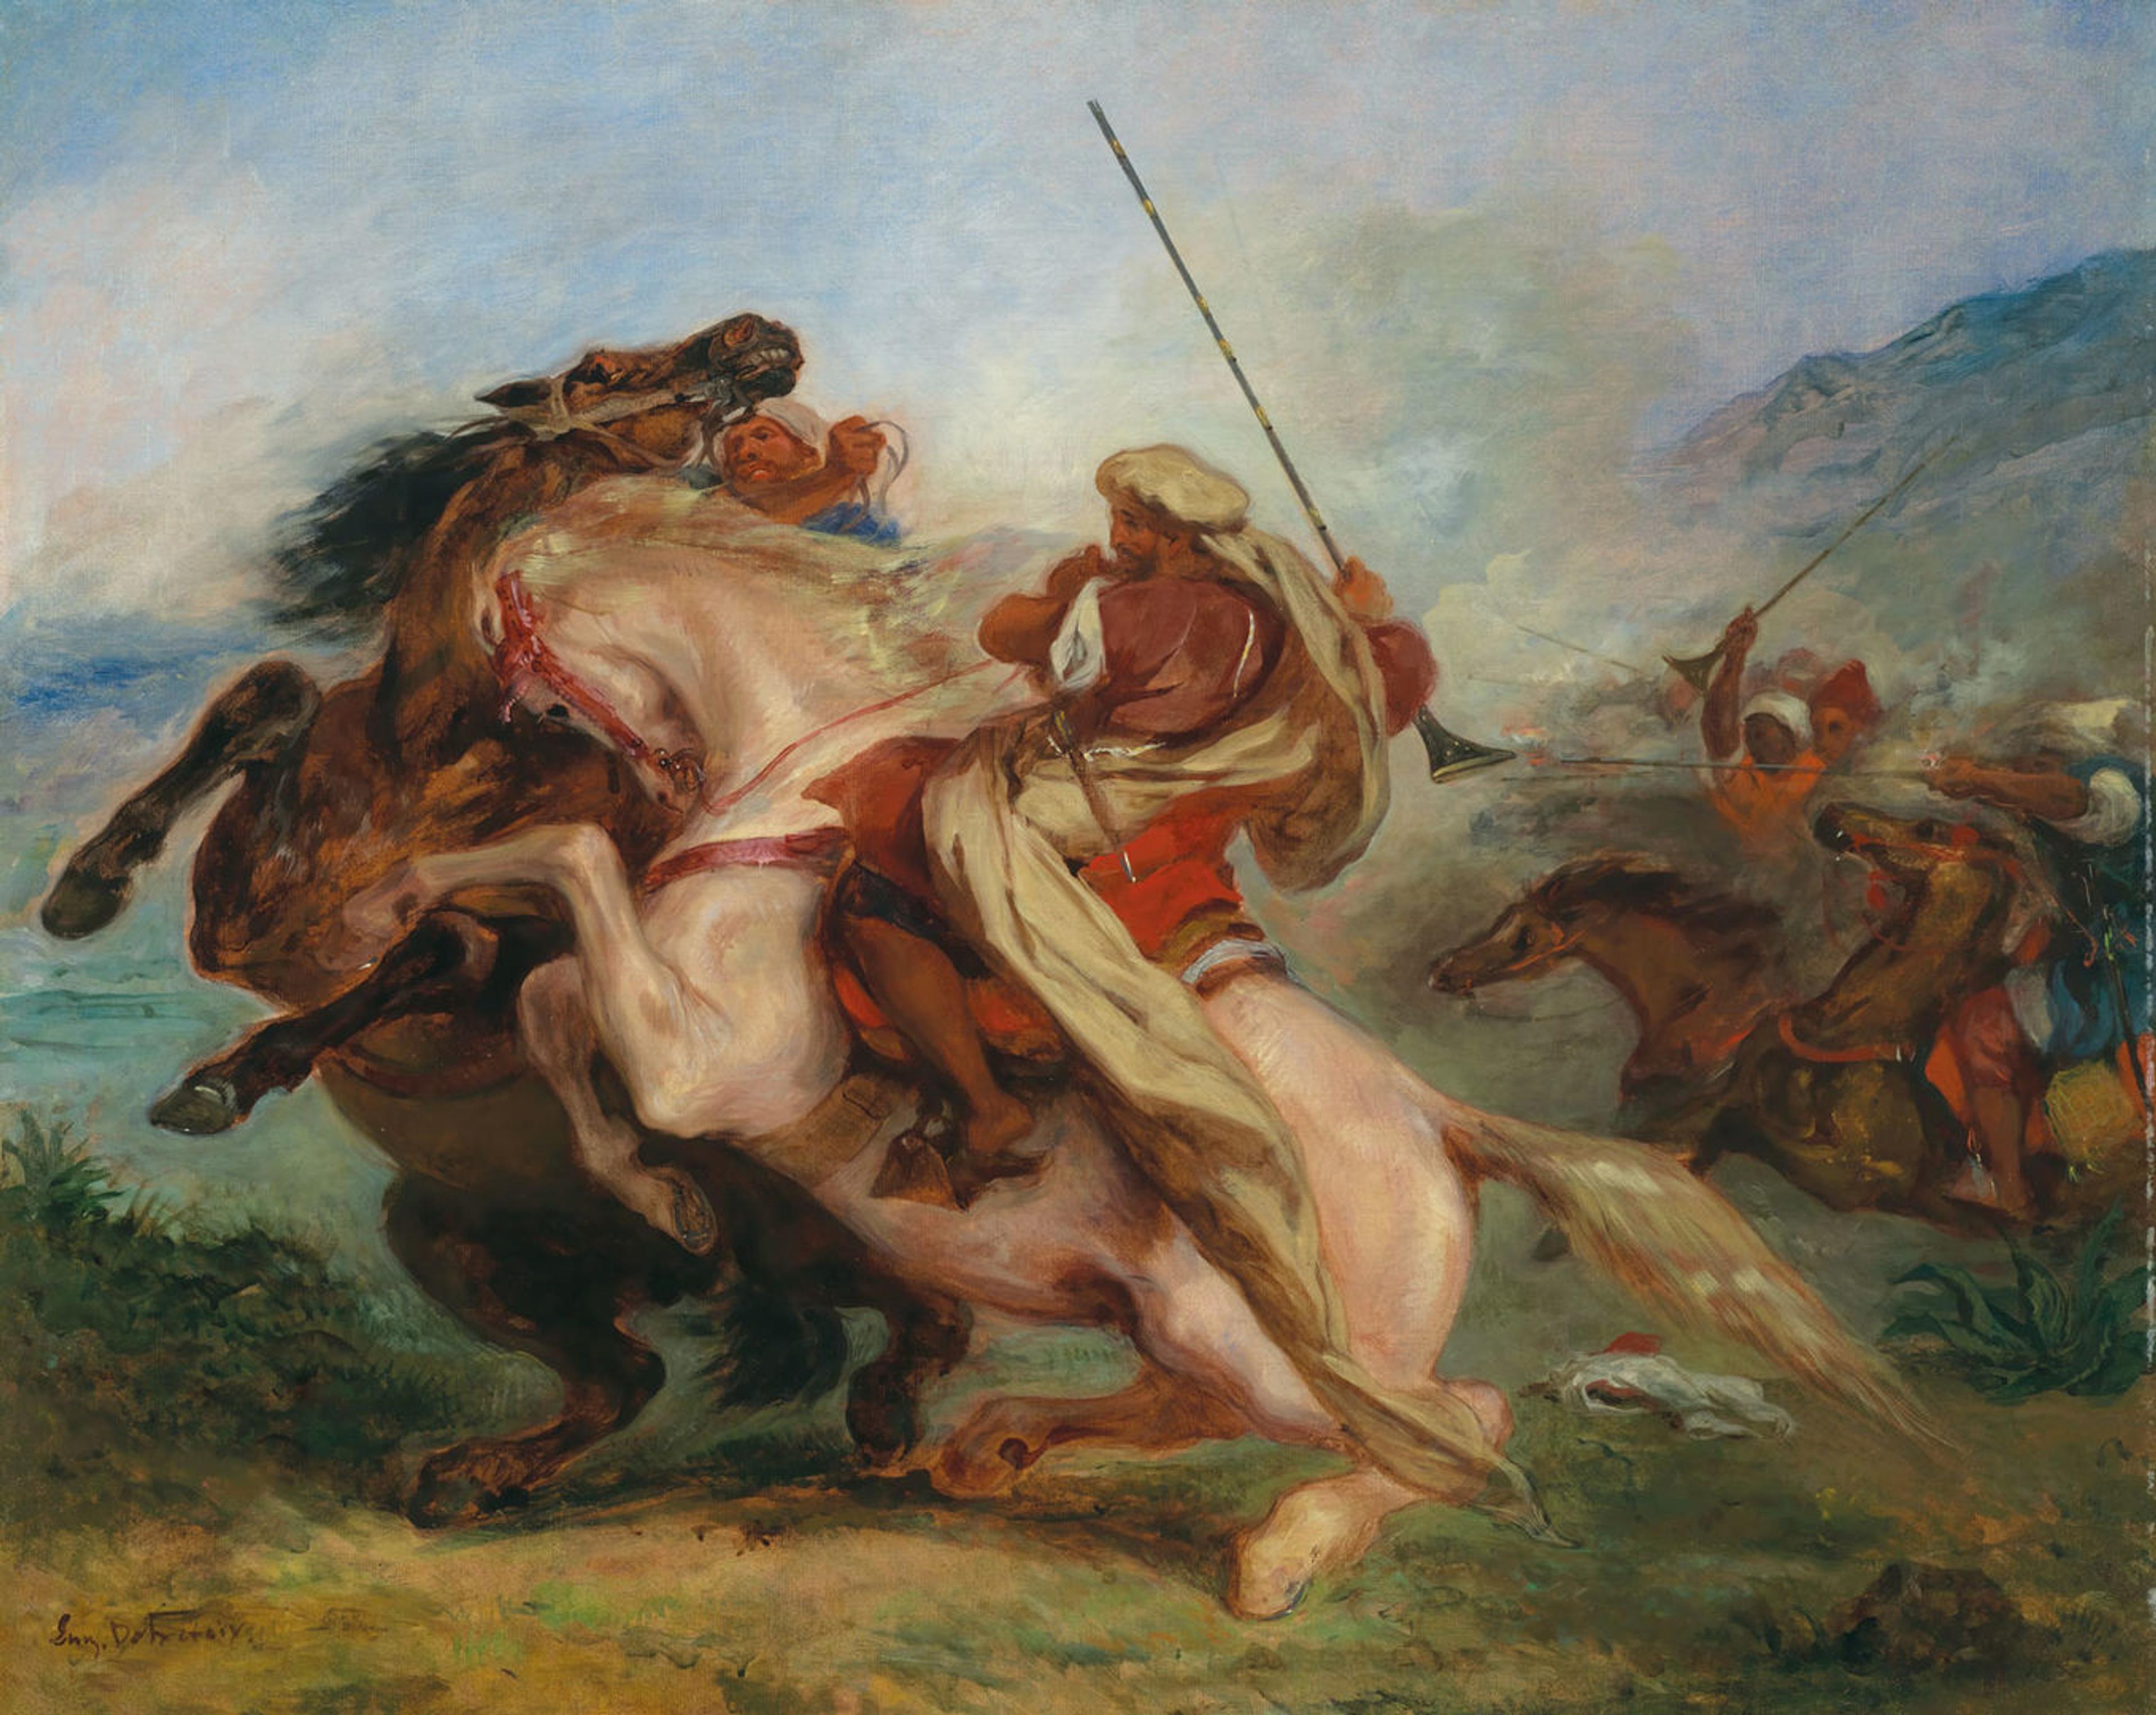 Delacroix painting depicting various Arab soldiers on horseback